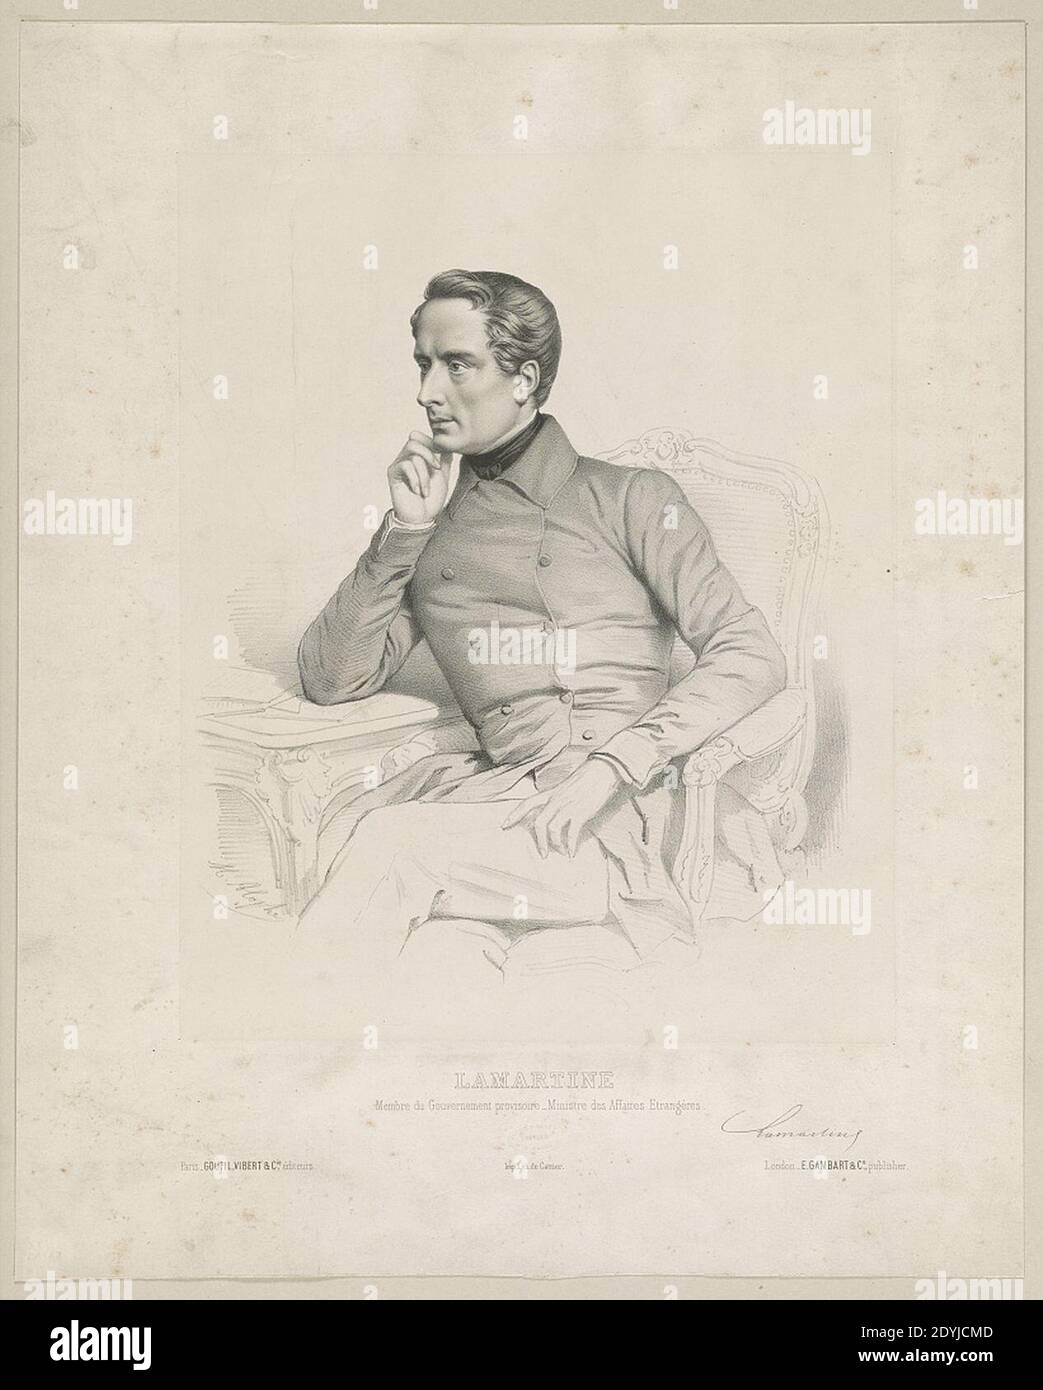 Lamartine membre du gouvernement provisoire - ministre des affaires etrangères - M. Alophe. Stock Photo